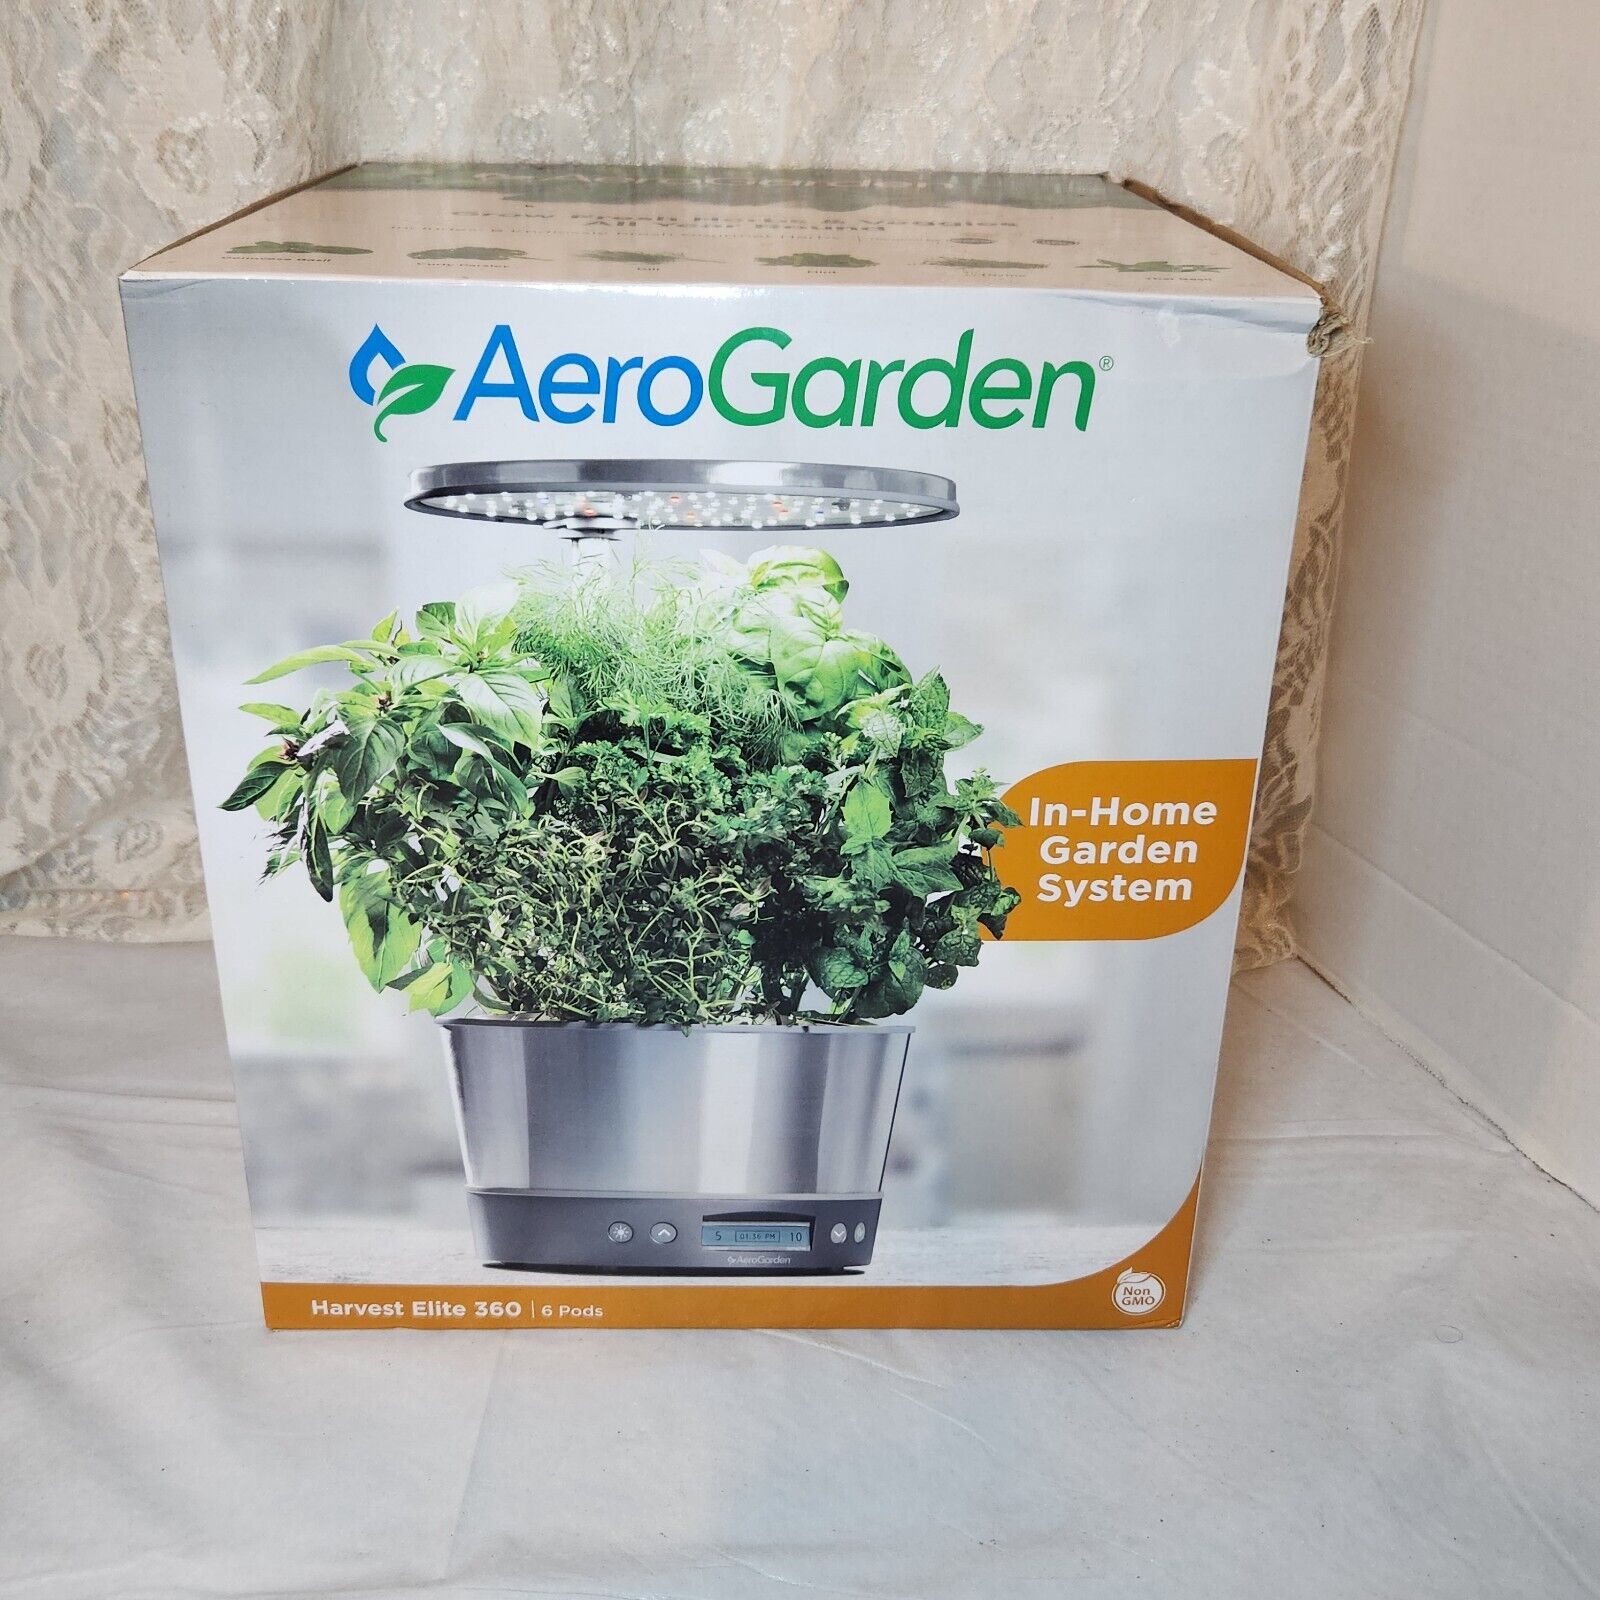 AeroGarden Harvest Elite 360 Stainless Steel In-Home Garden System Never Used